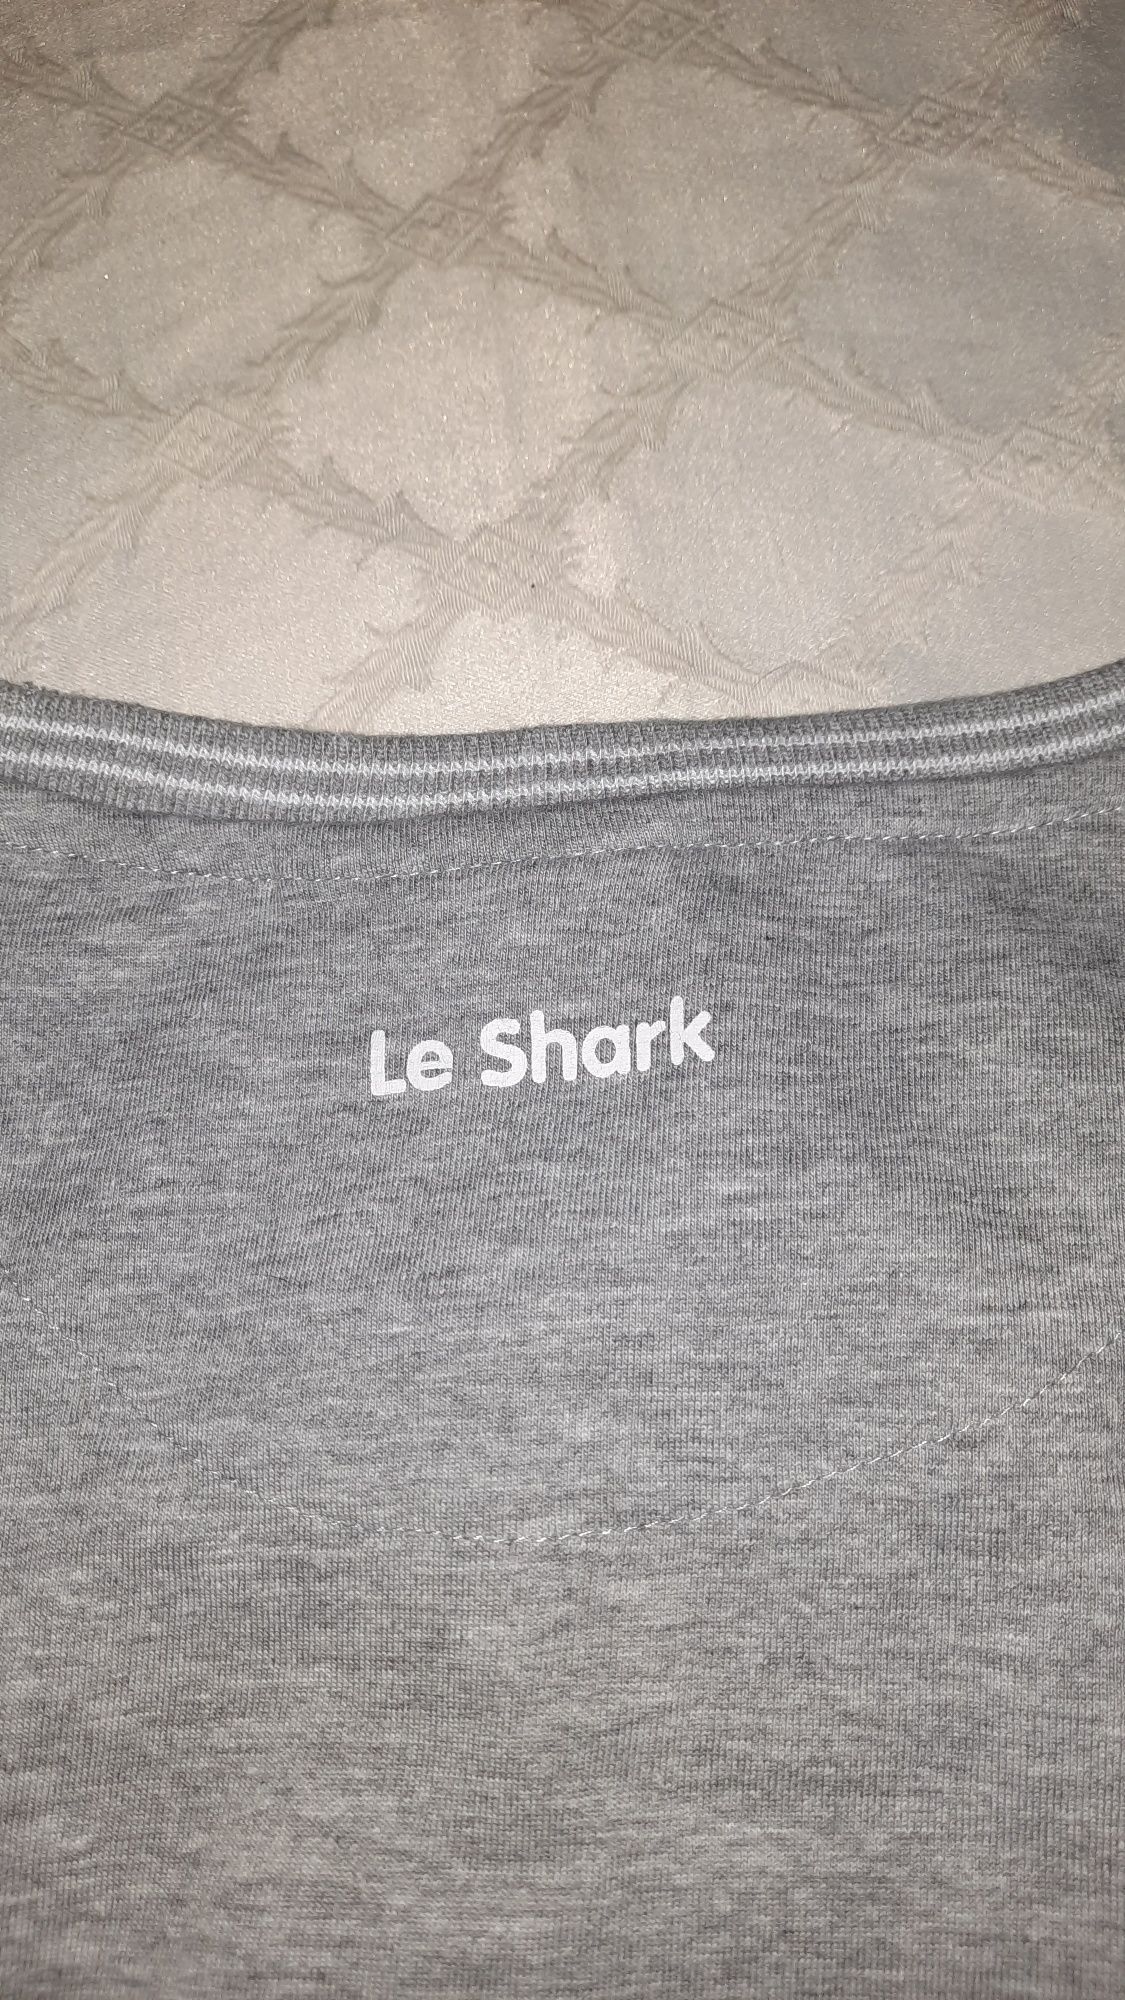 Фирменная футболка Le Shark